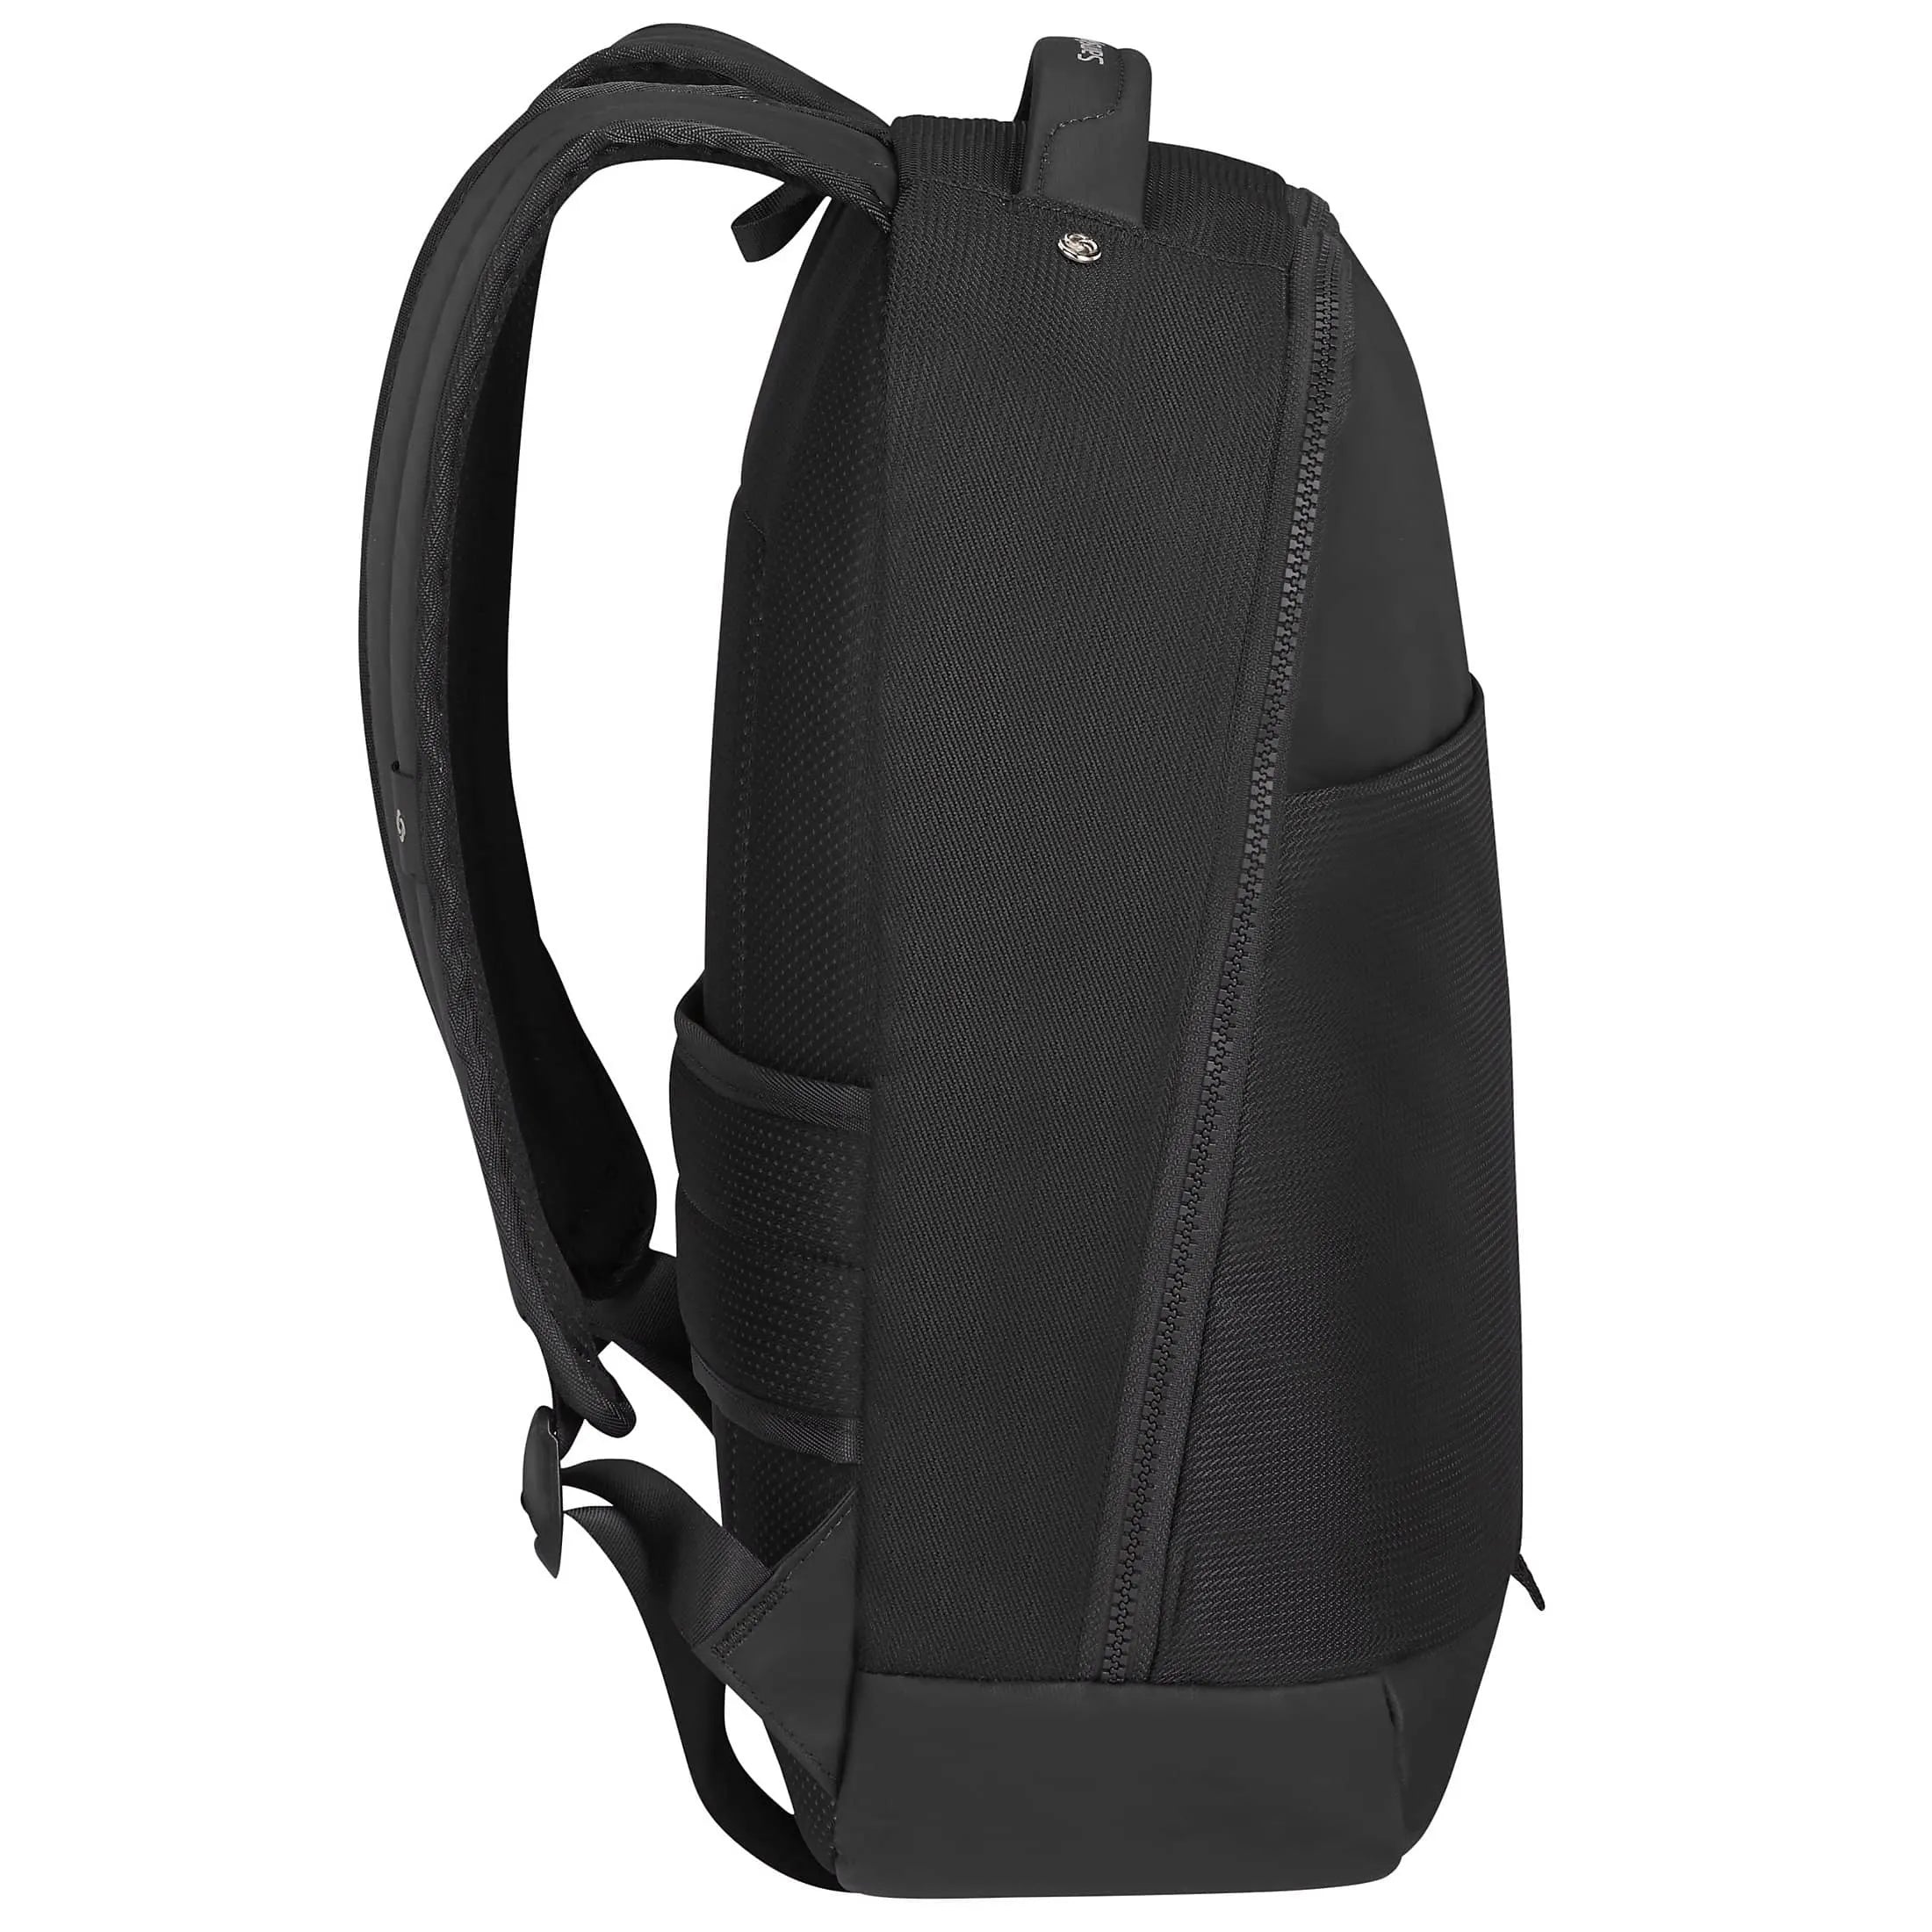 Samsonite Midtown Laptop Backpack S 41 cm - Black